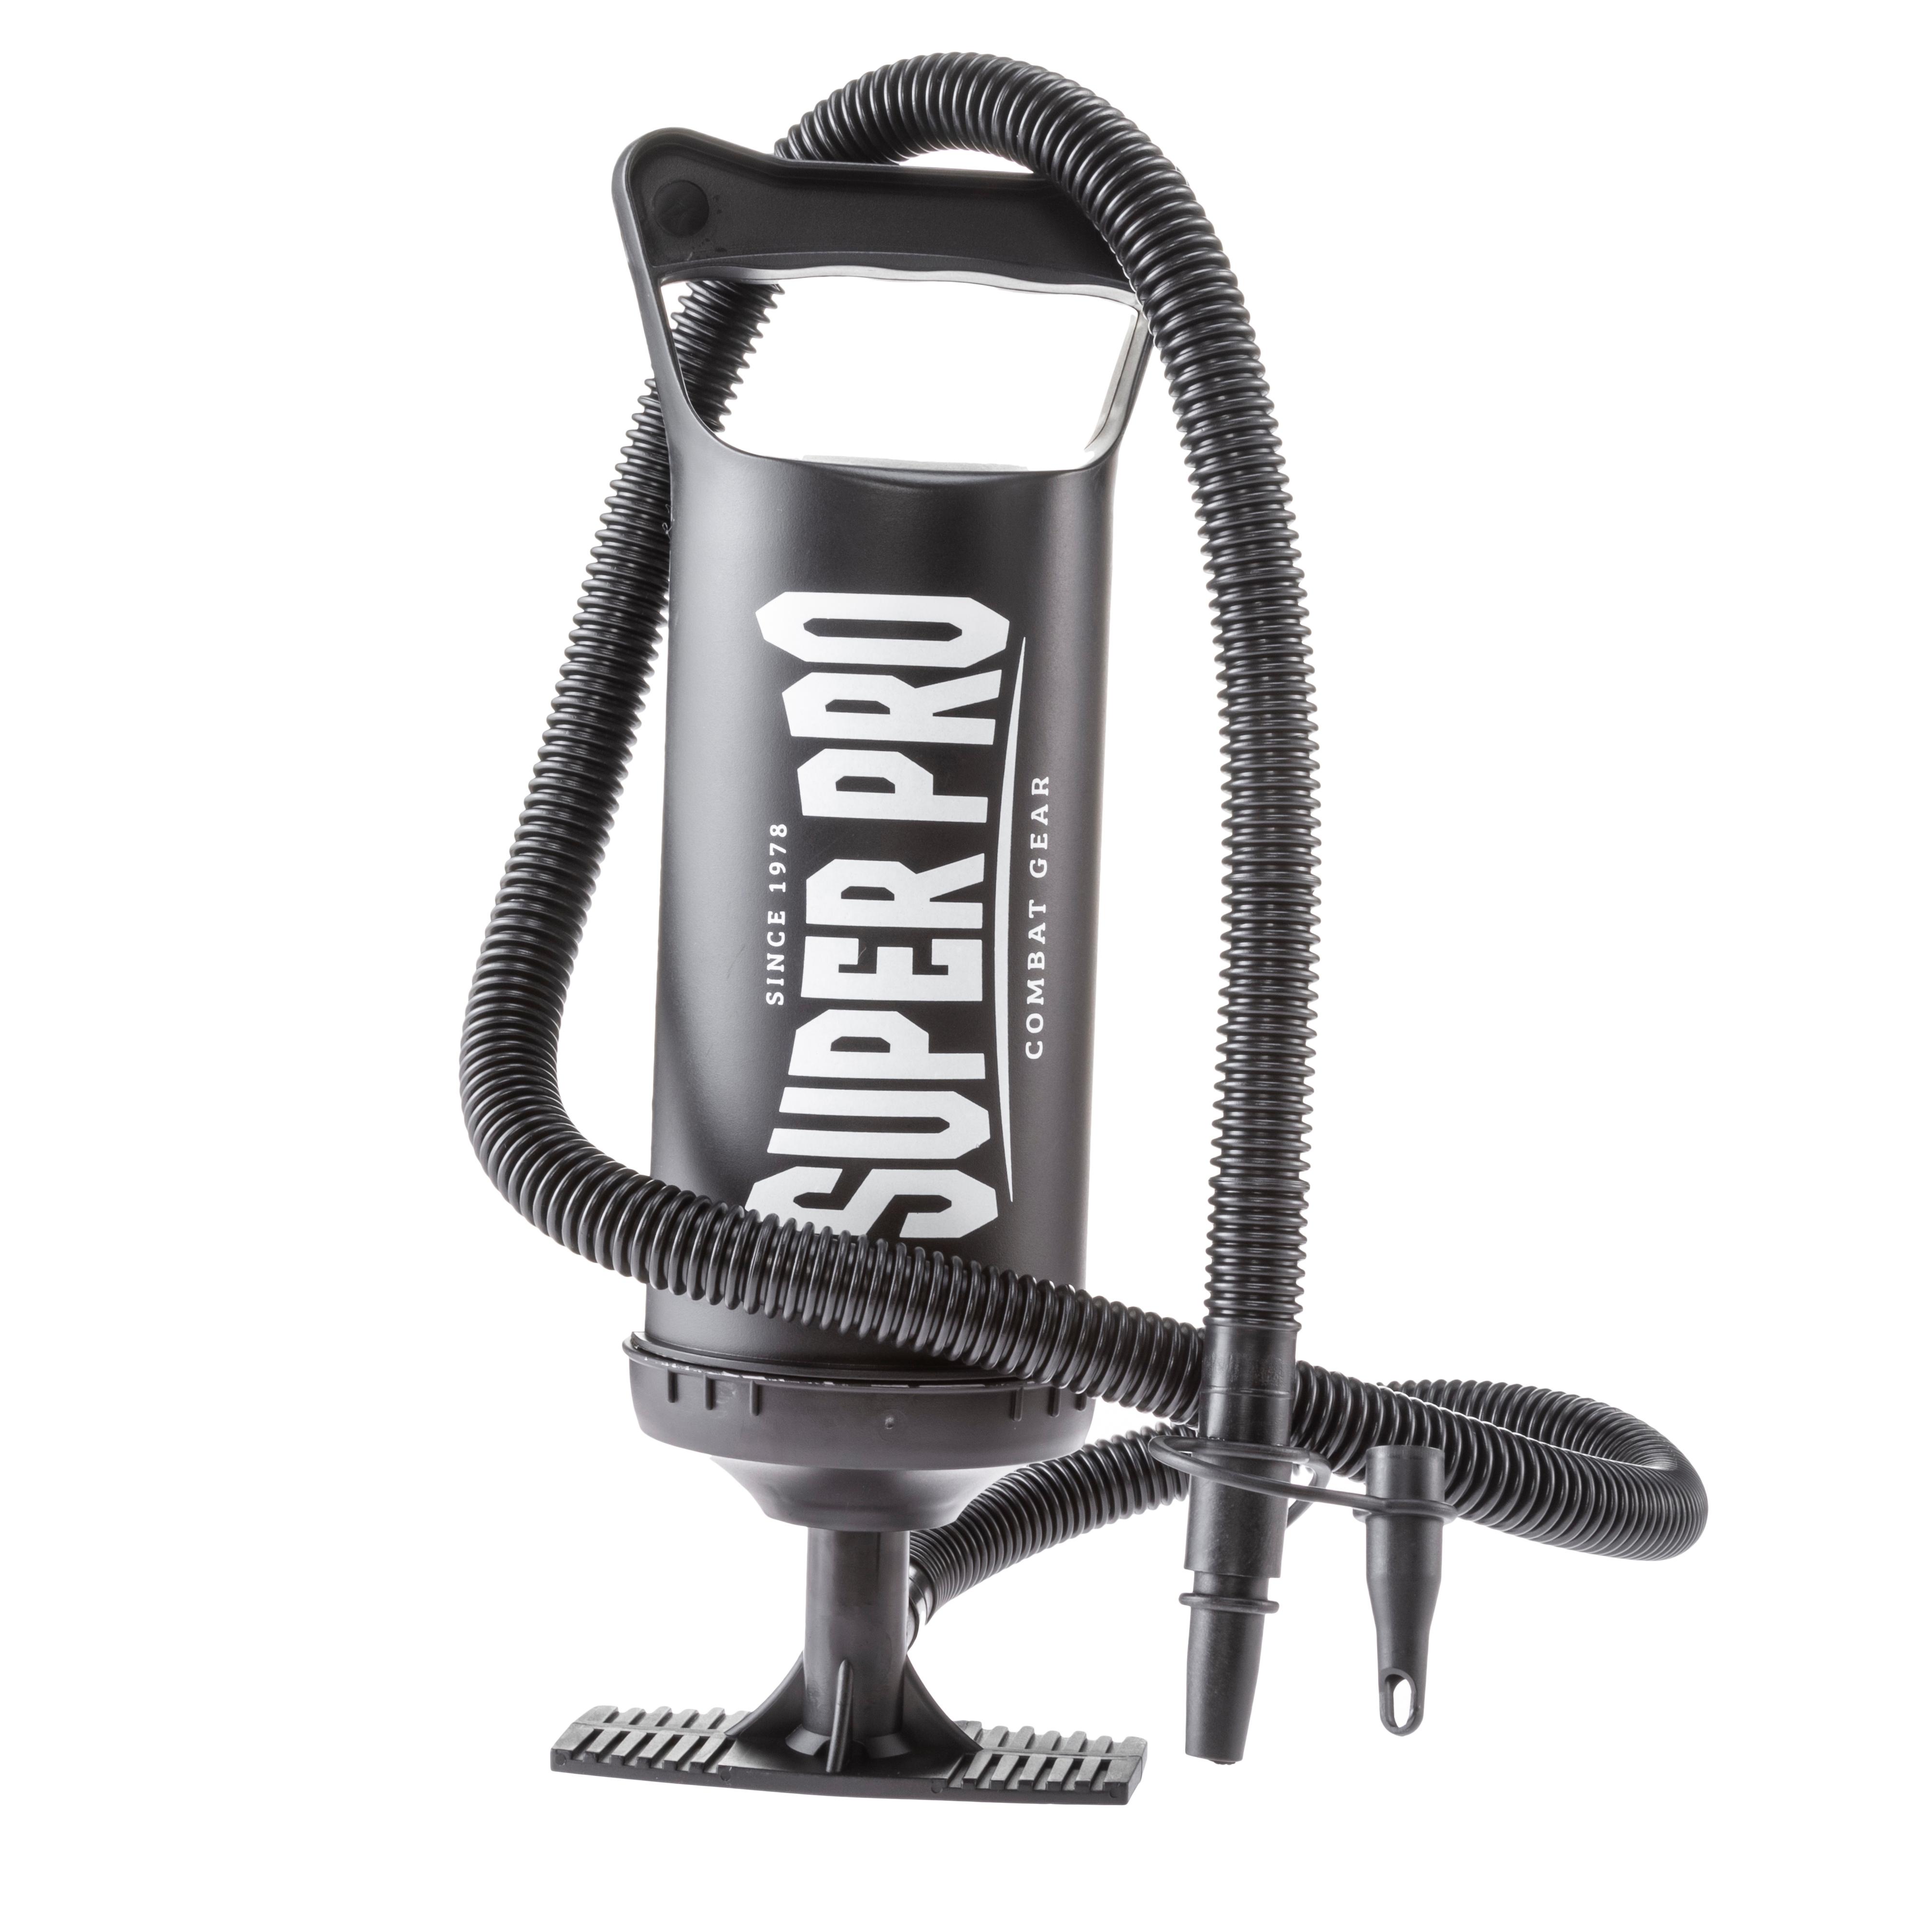 Super Pro Super Shop im Water black Pro Air Boxsack von Online SportScheck kaufen